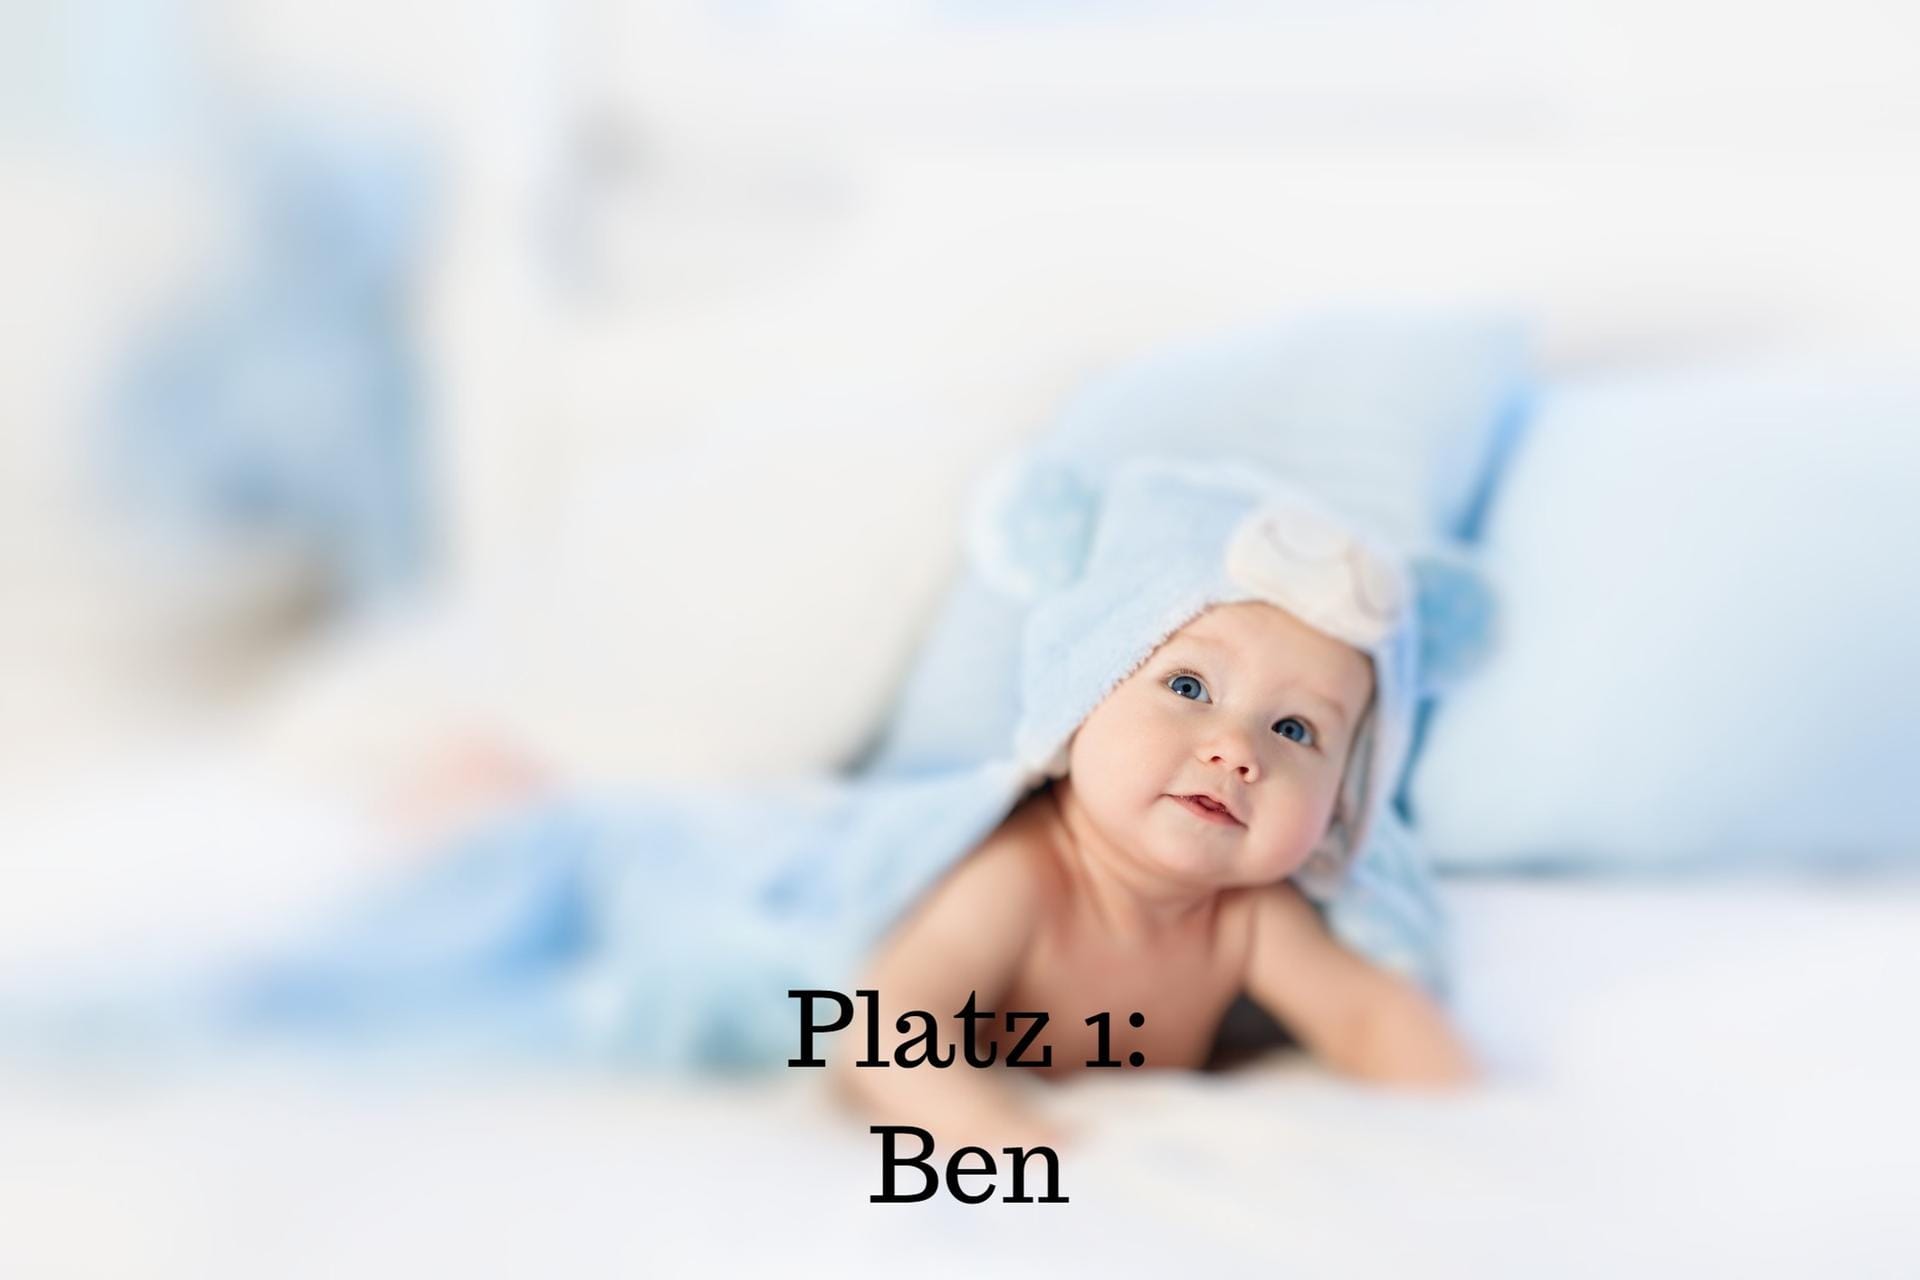 Platz 1: Ben – Der Name ist die Kurzform von Benjamin, Benedikt oder Bernhard und hat einen lateinischen, hebräischen sowie althochdeutschen Ursprung. Übersetzt bedeutet der Name "der Sohn", "der Gesegnete" oder "der gute Redner".